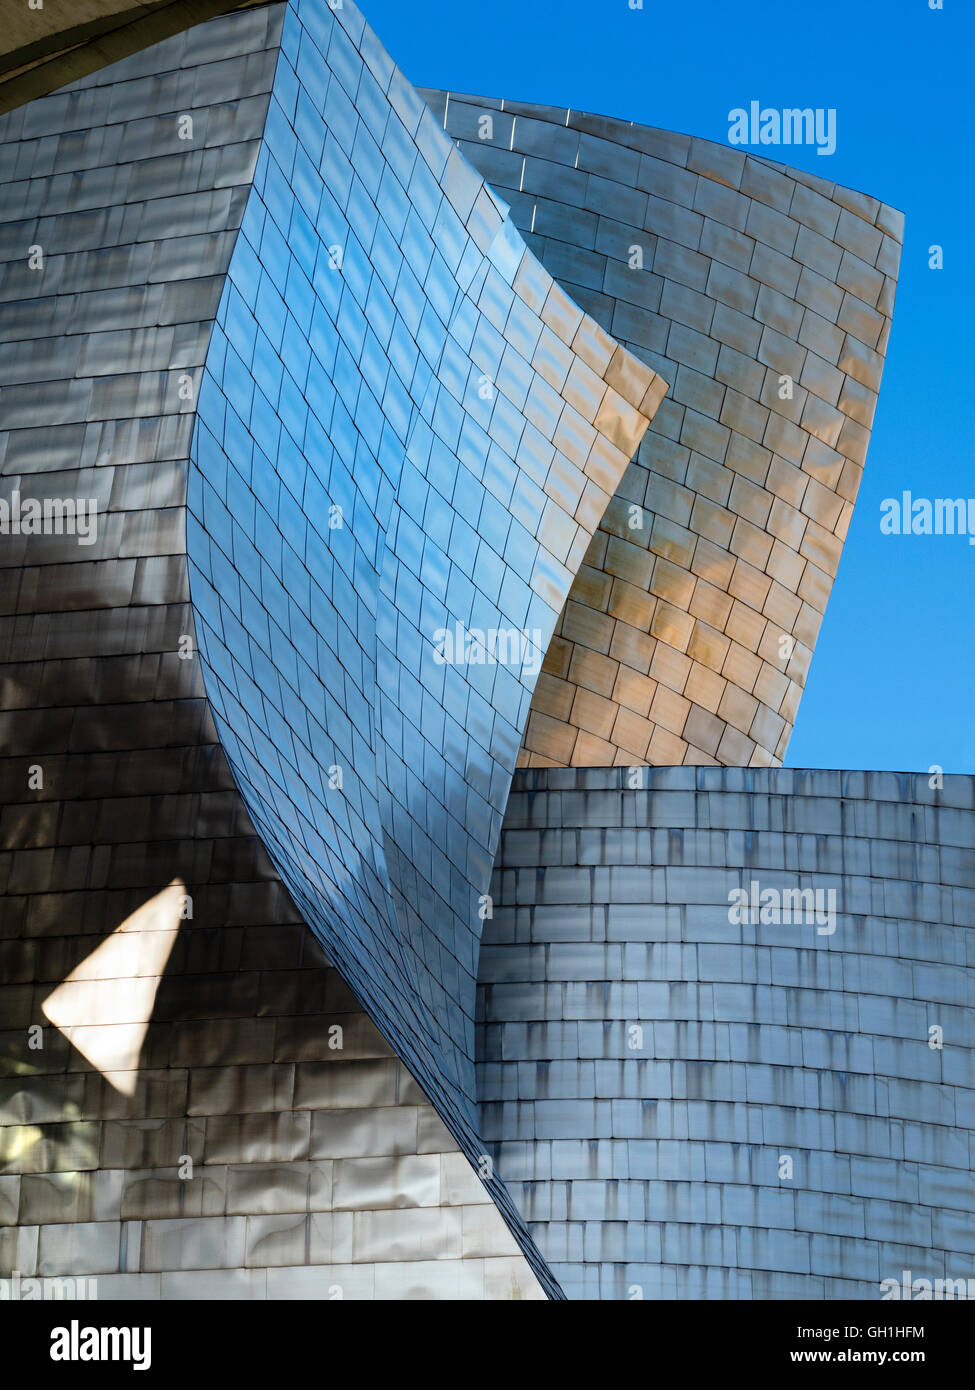 The iconic Guggenheim Museum in Bilbao, Spain 23 Stock Photo